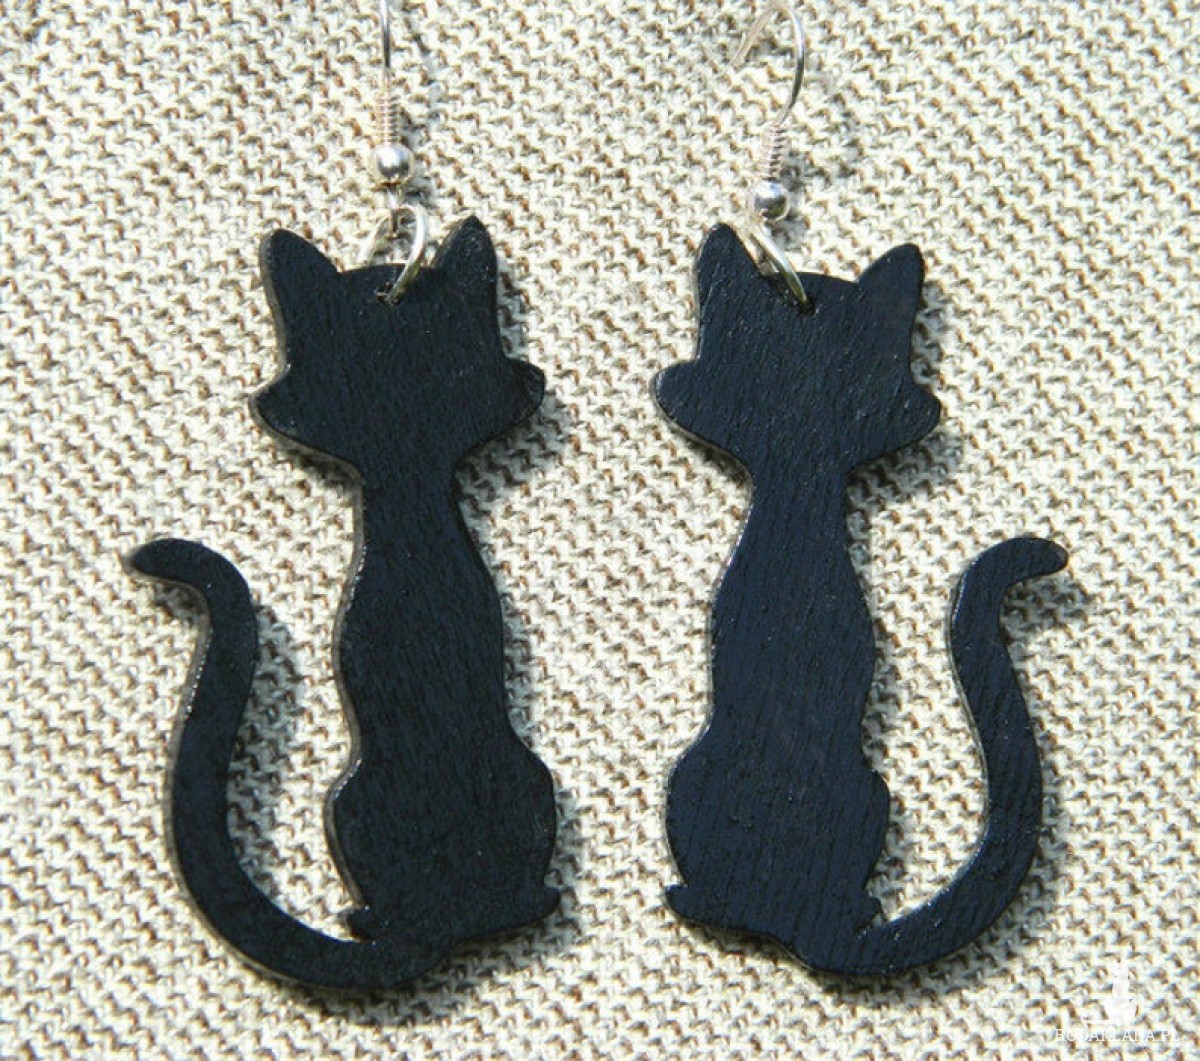 Kolczyki koty, czarny kot na szczęście, biżuteria z motywem kota, Kotki, Prezent z kotem, kolczyki z kotami, dla kociary